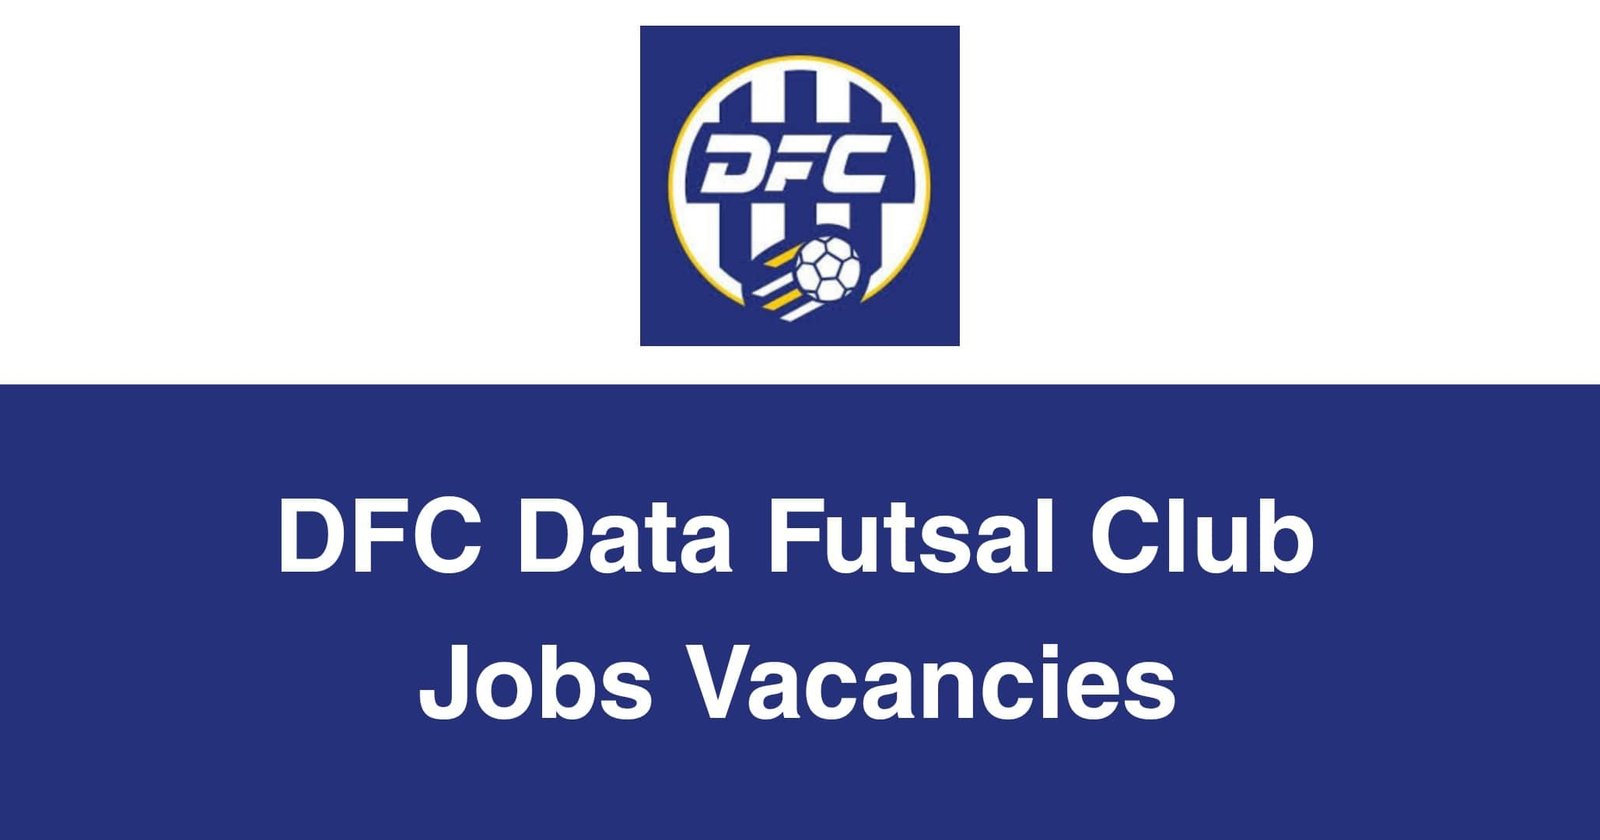 DFC Data Futsal Club Jobs Vacancies